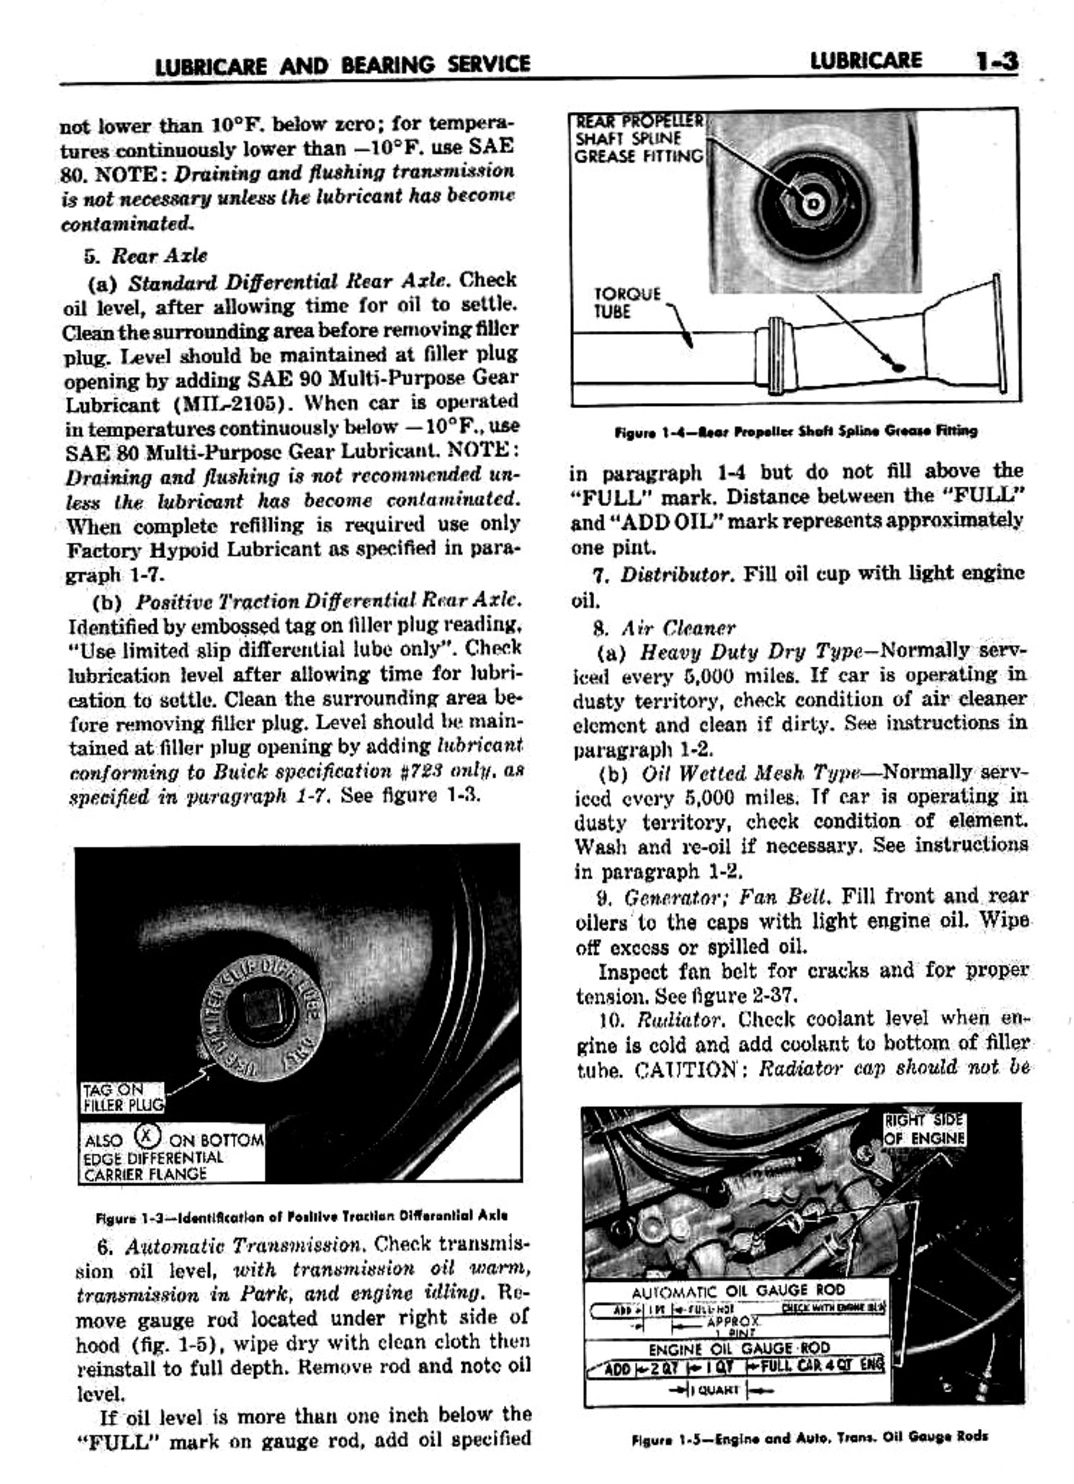 n_02 1959 Buick Shop Manual - Lubricare-003-003.jpg